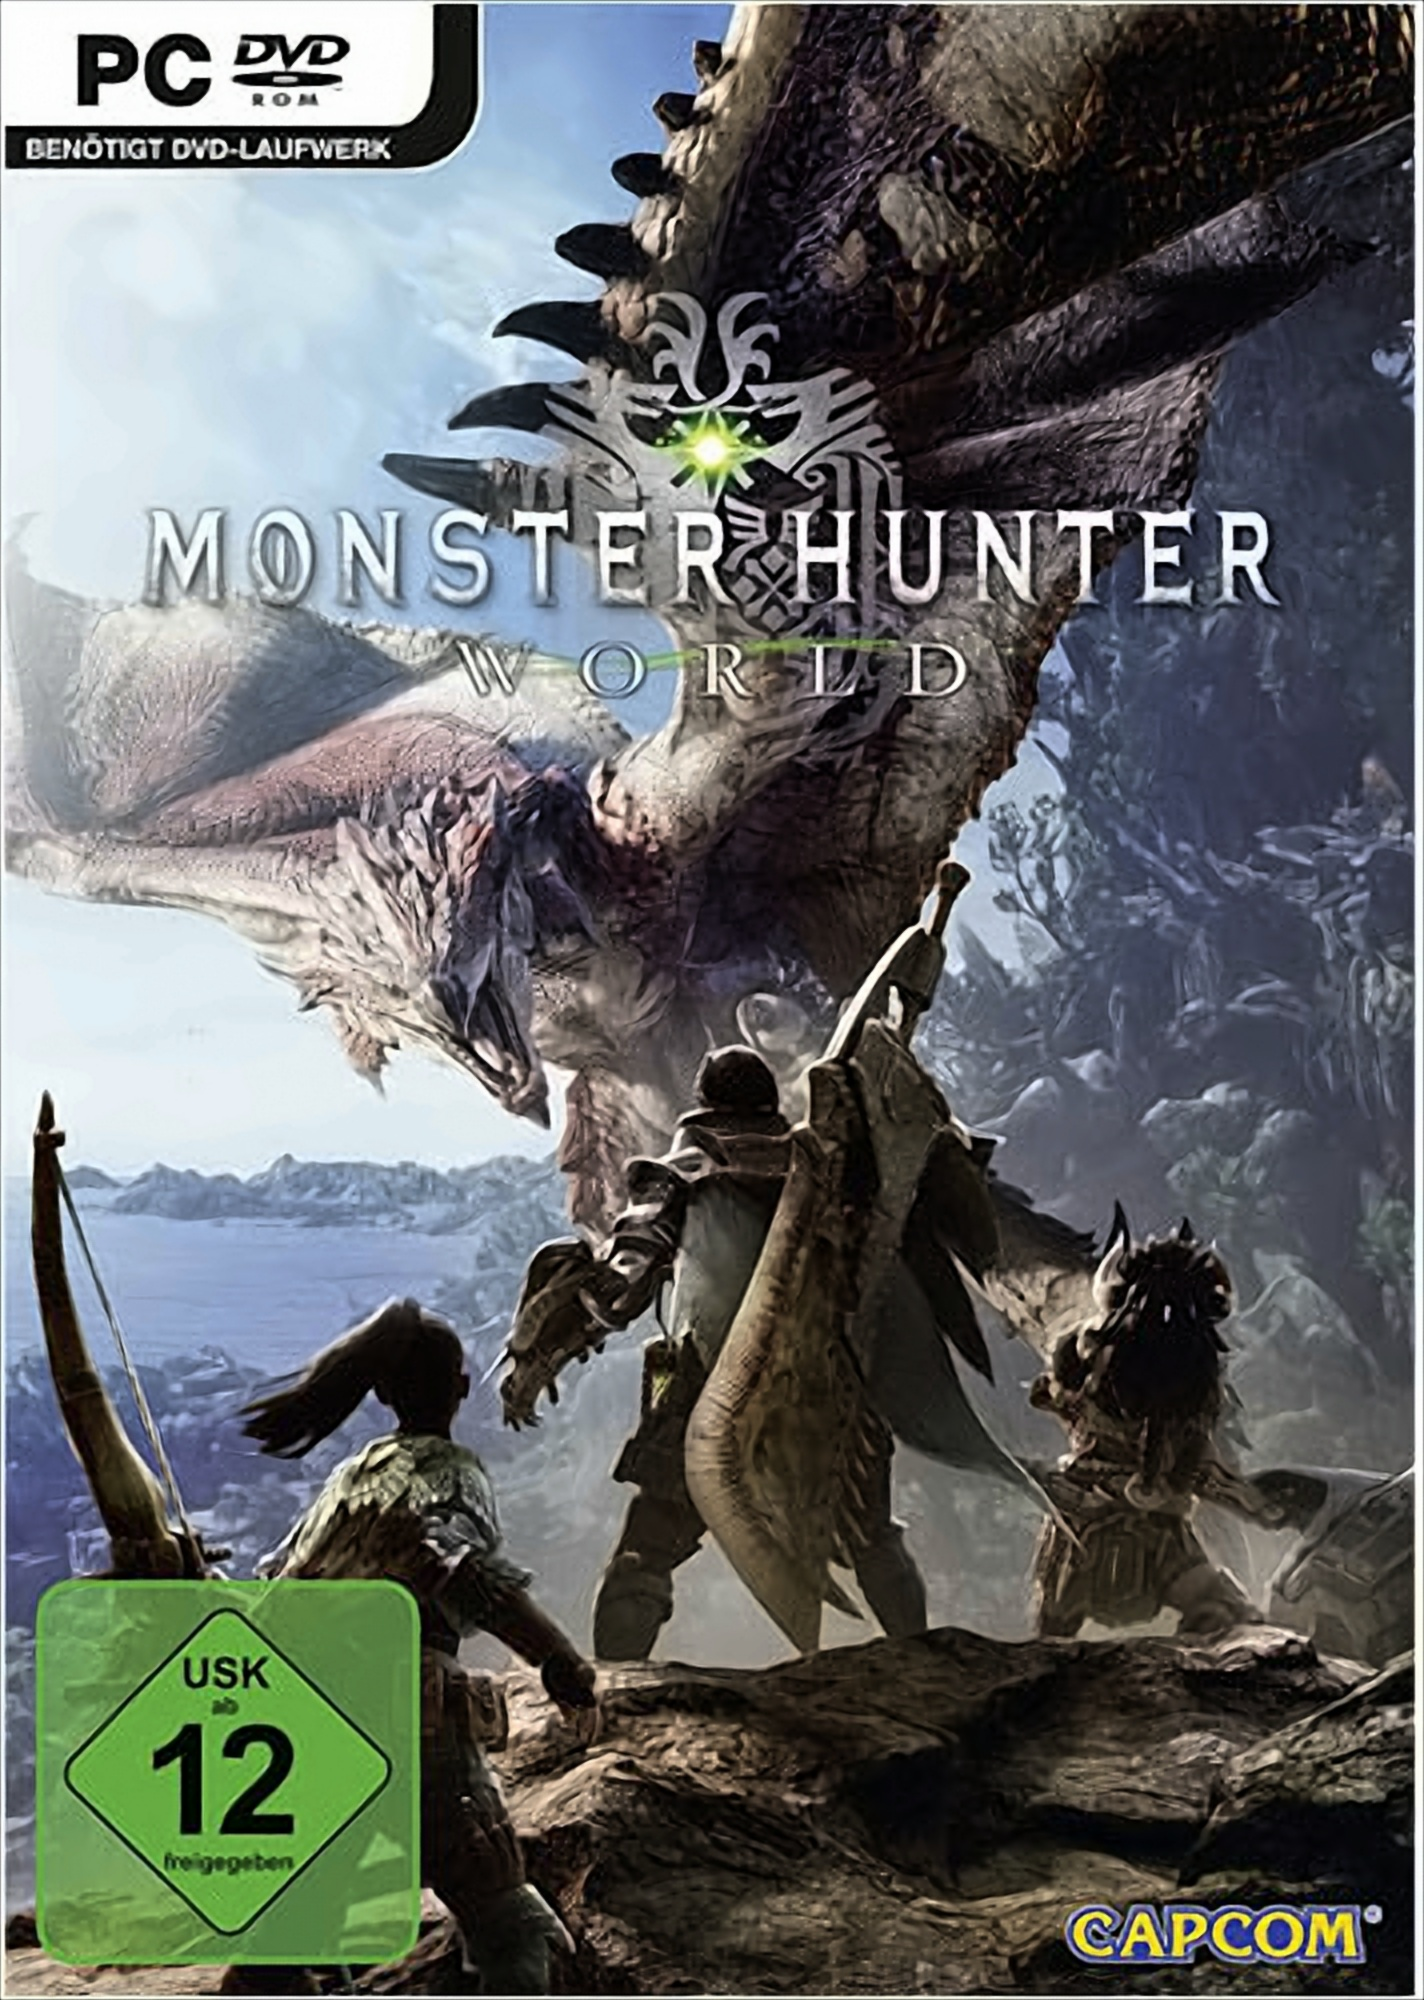 Monster Hunter World PC - [PC